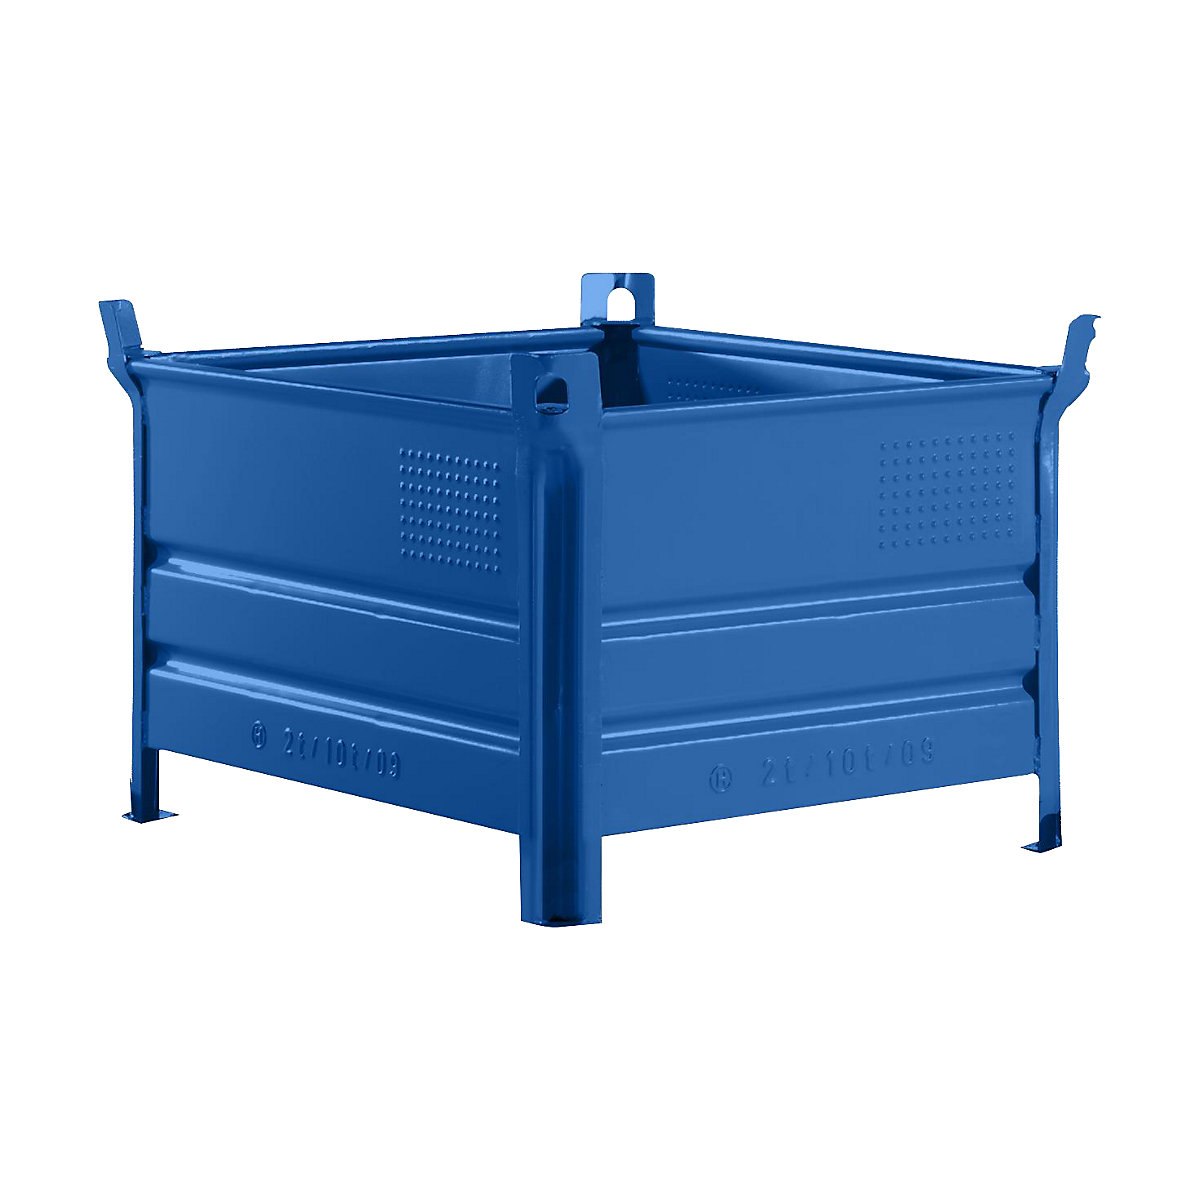 Stohovacia prepravka s plnou stenou – Heson, š x d 800 x 1000 mm, nosnosť 1000 kg, modrá, od 5 ks-8